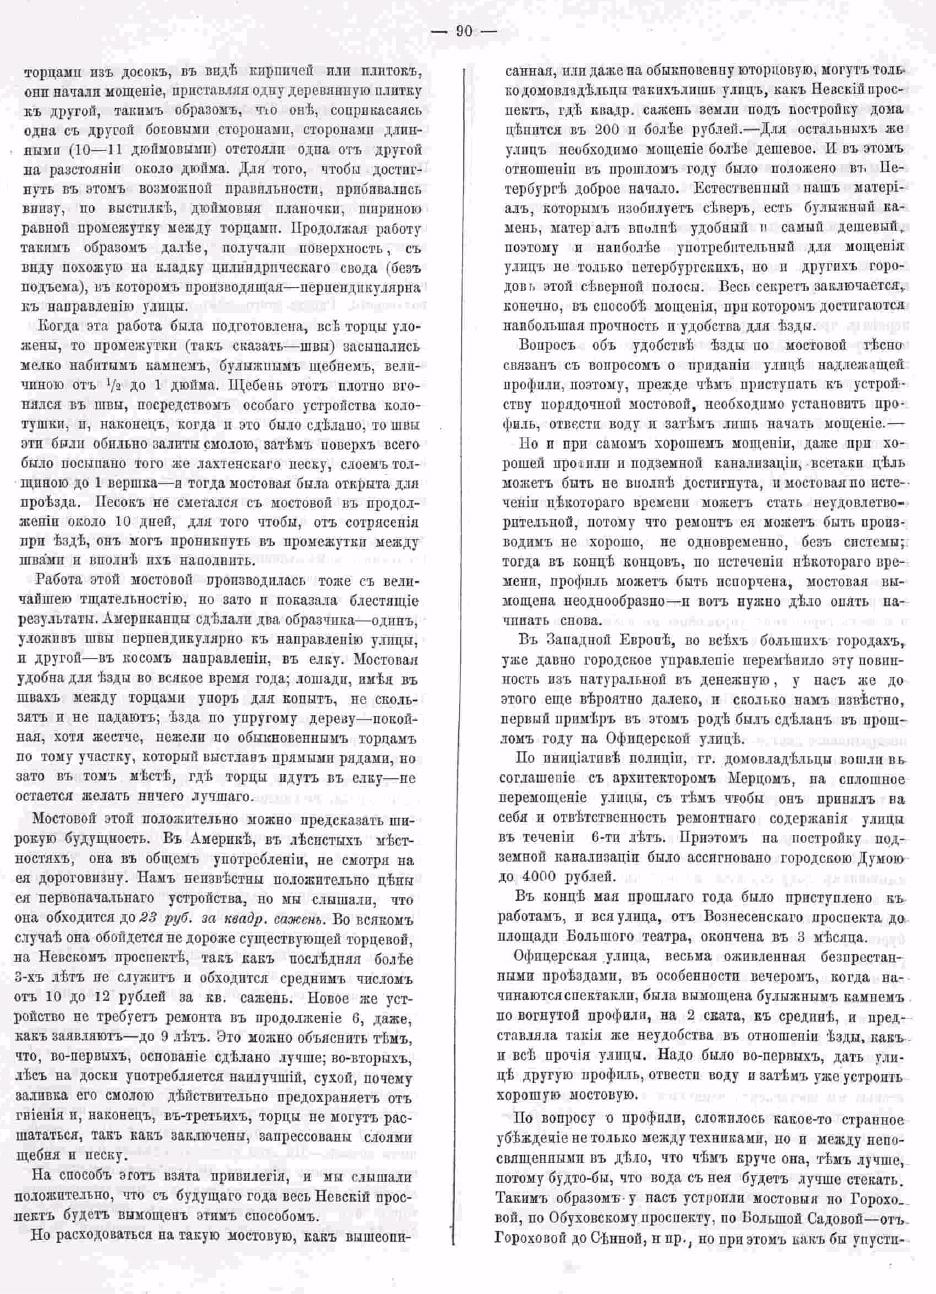 О Петербургских мостовых. Зодчий, 1872, 6, стр. 90